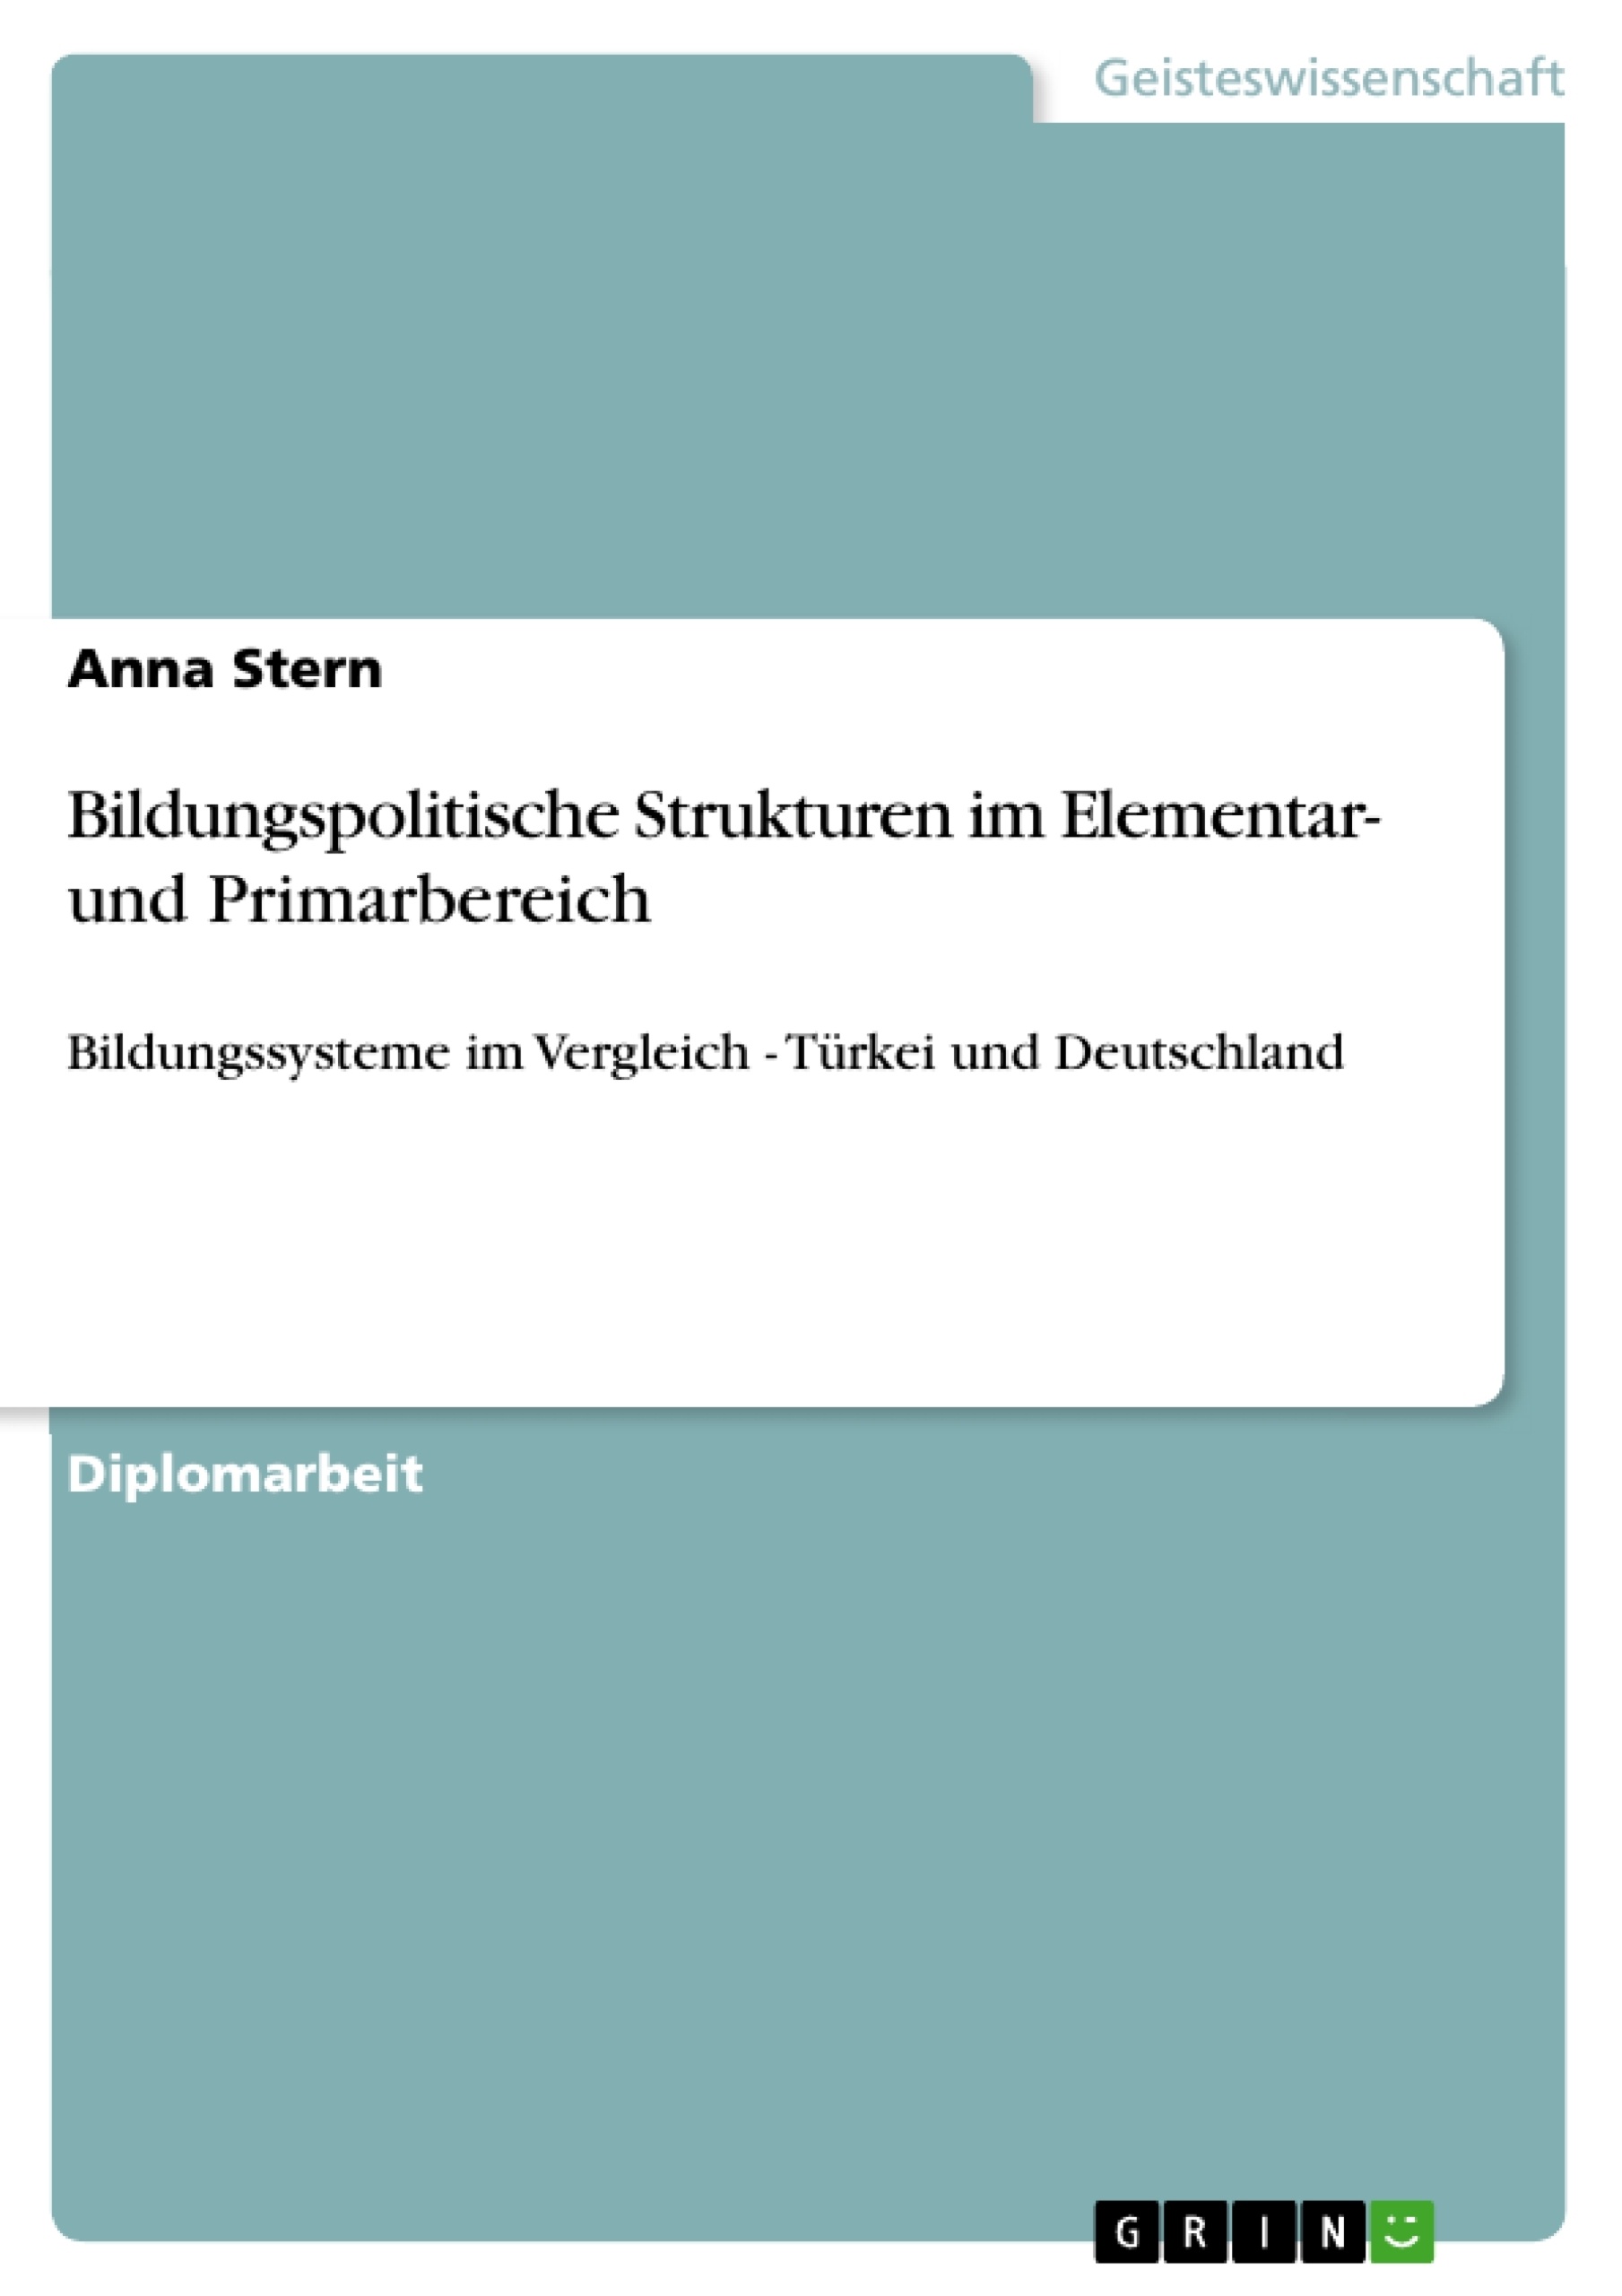 Titre: Bildungspolitische Strukturen im Elementar- und Primarbereich 